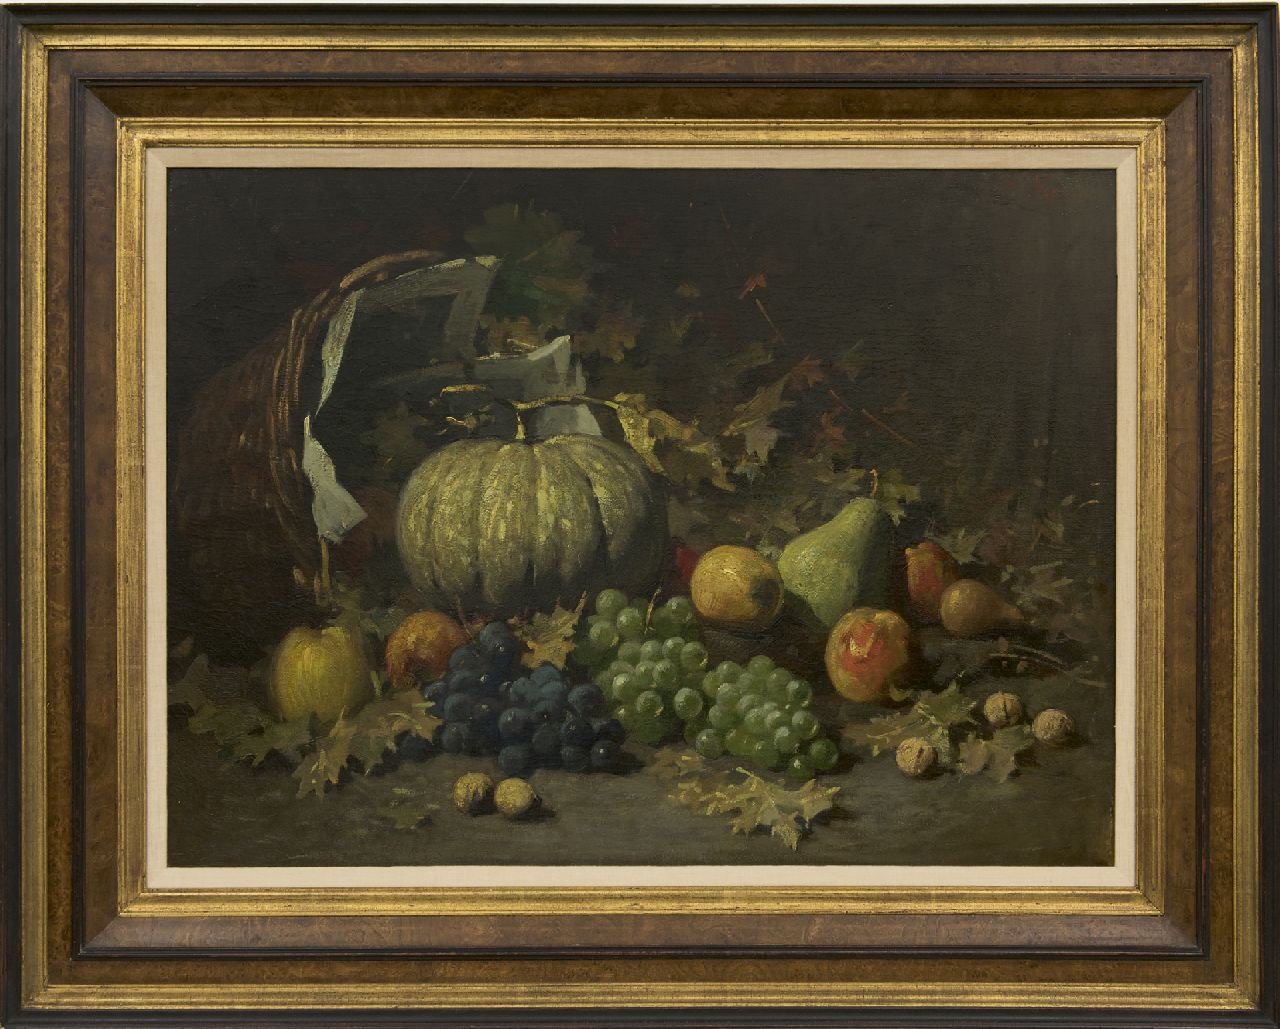 Kriens O.G.A.  | 'Otto' Gustav Adolf Kriens | Schilderijen te koop aangeboden | Vruchten in een mand op de bosgrond, olieverf op doek 54,4 x 73,0 cm, gesigneerd rechtsboven